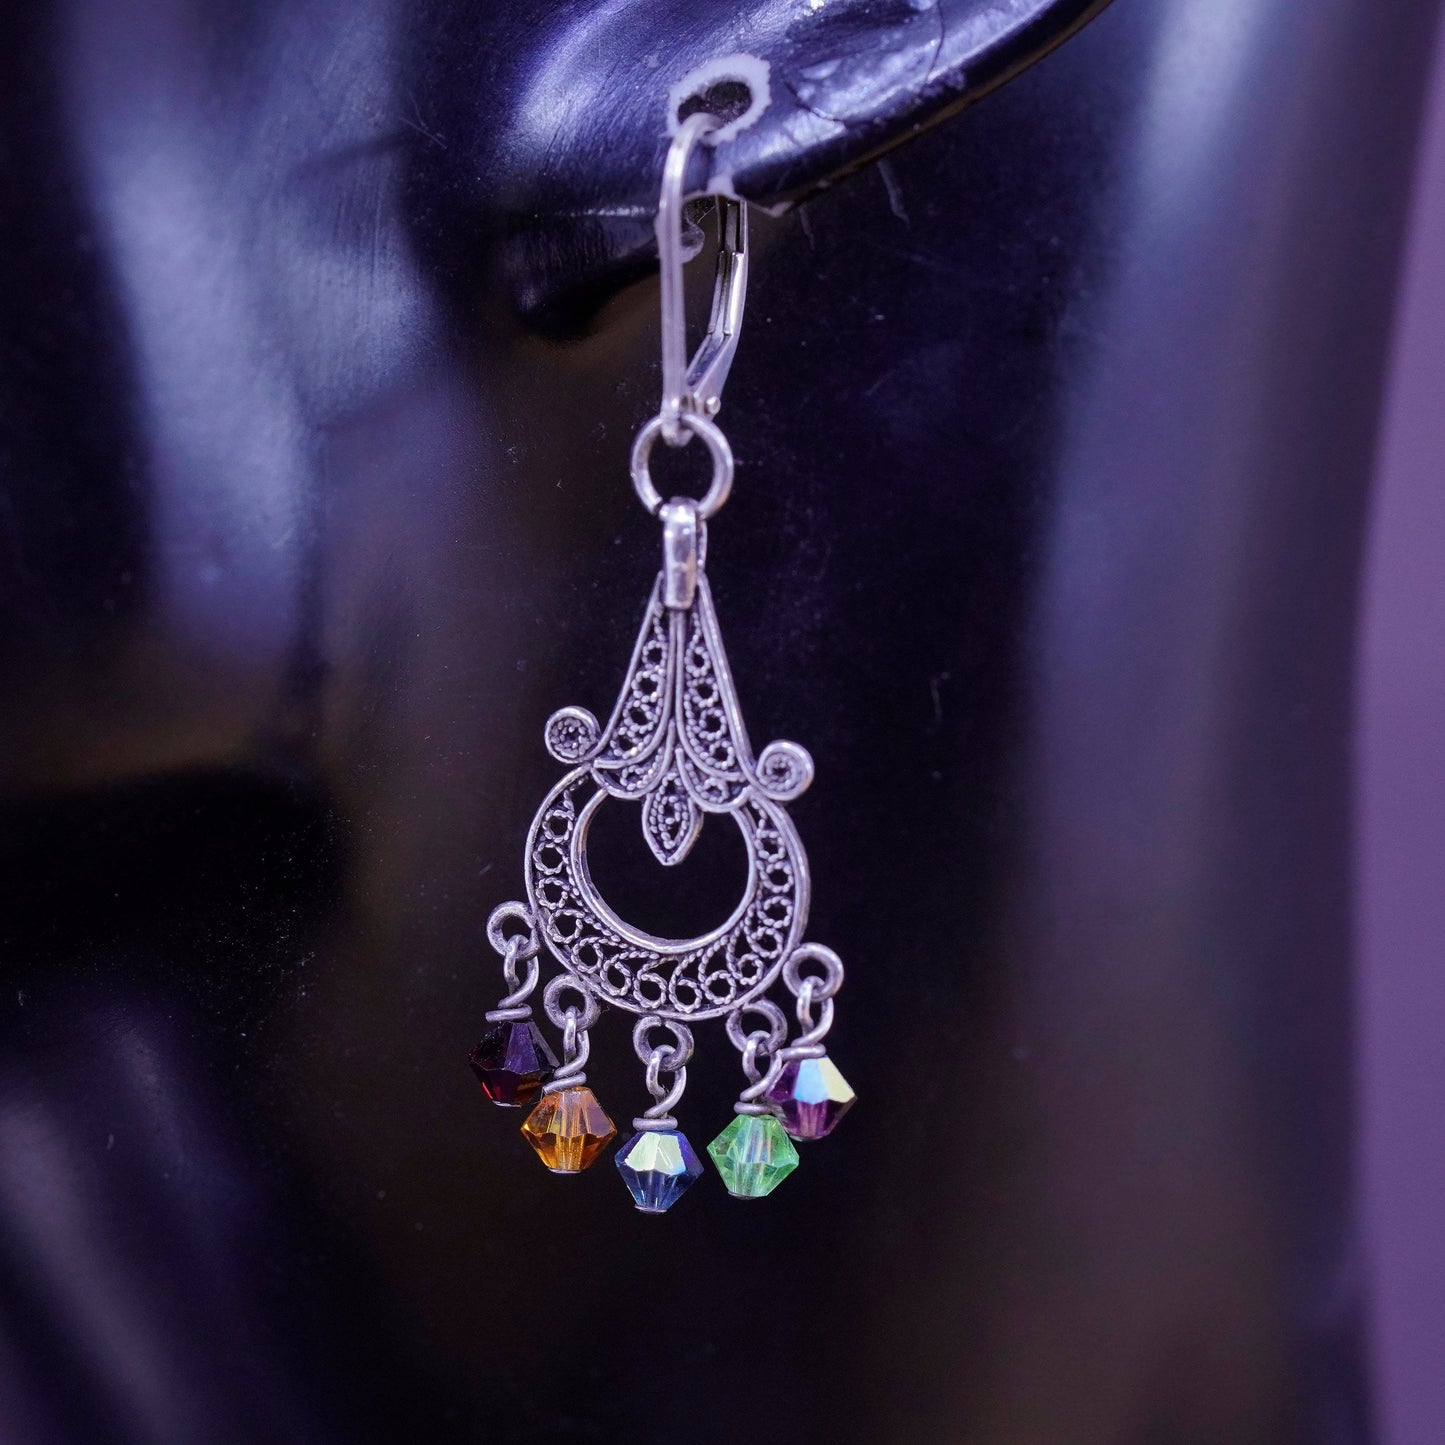 Vintage sterling silver handmade earrings, 925 teardrops filigree w/ gemstones